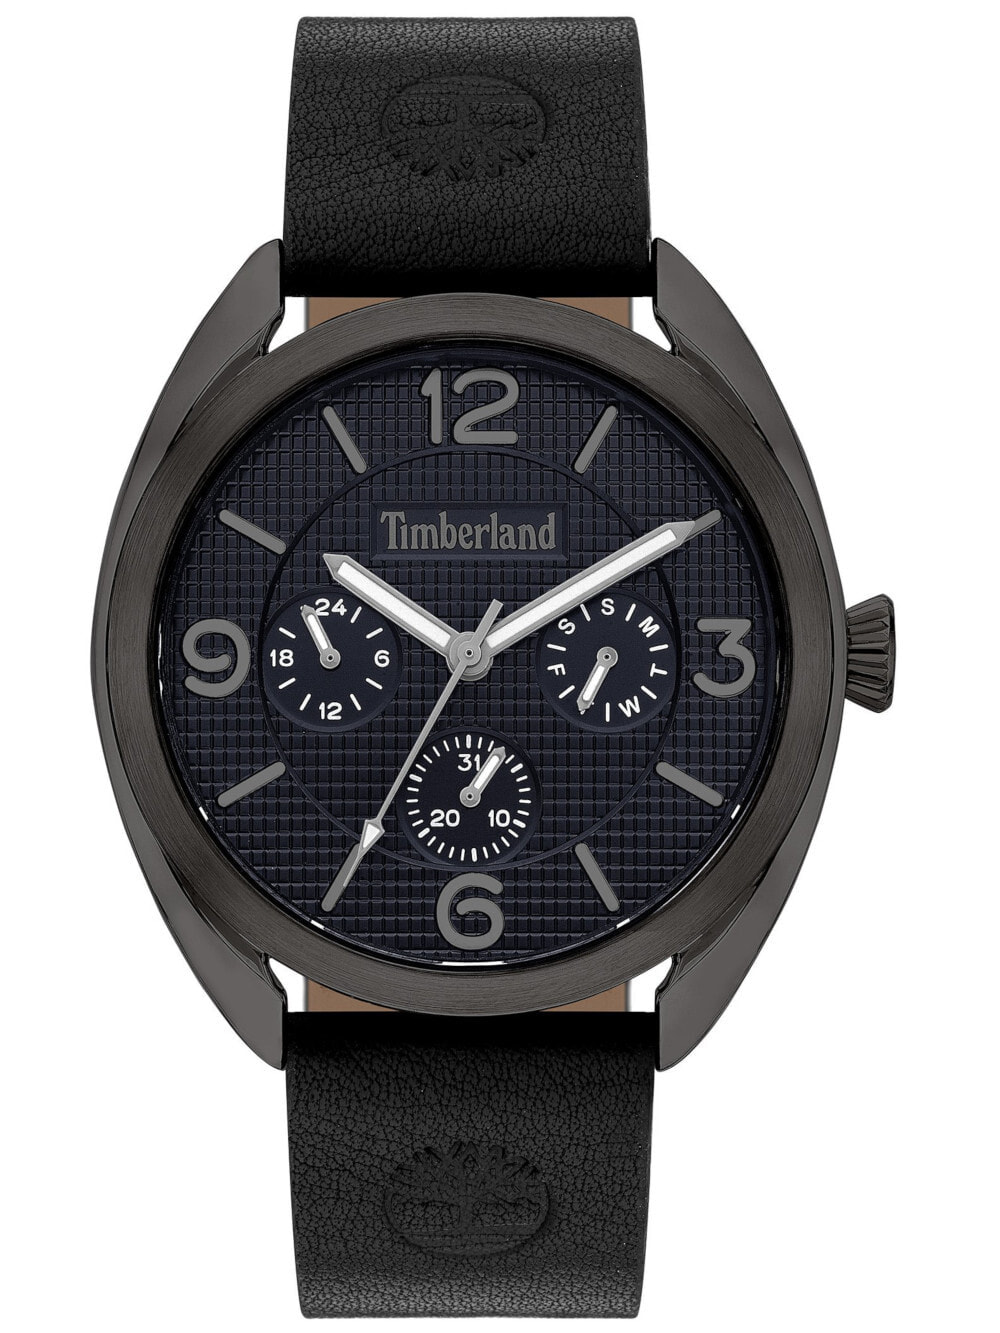 Мужские наручные часы с черным кожаным ремешком Timberland TBL15631JYU.03 Burnham 44mm 5ATM